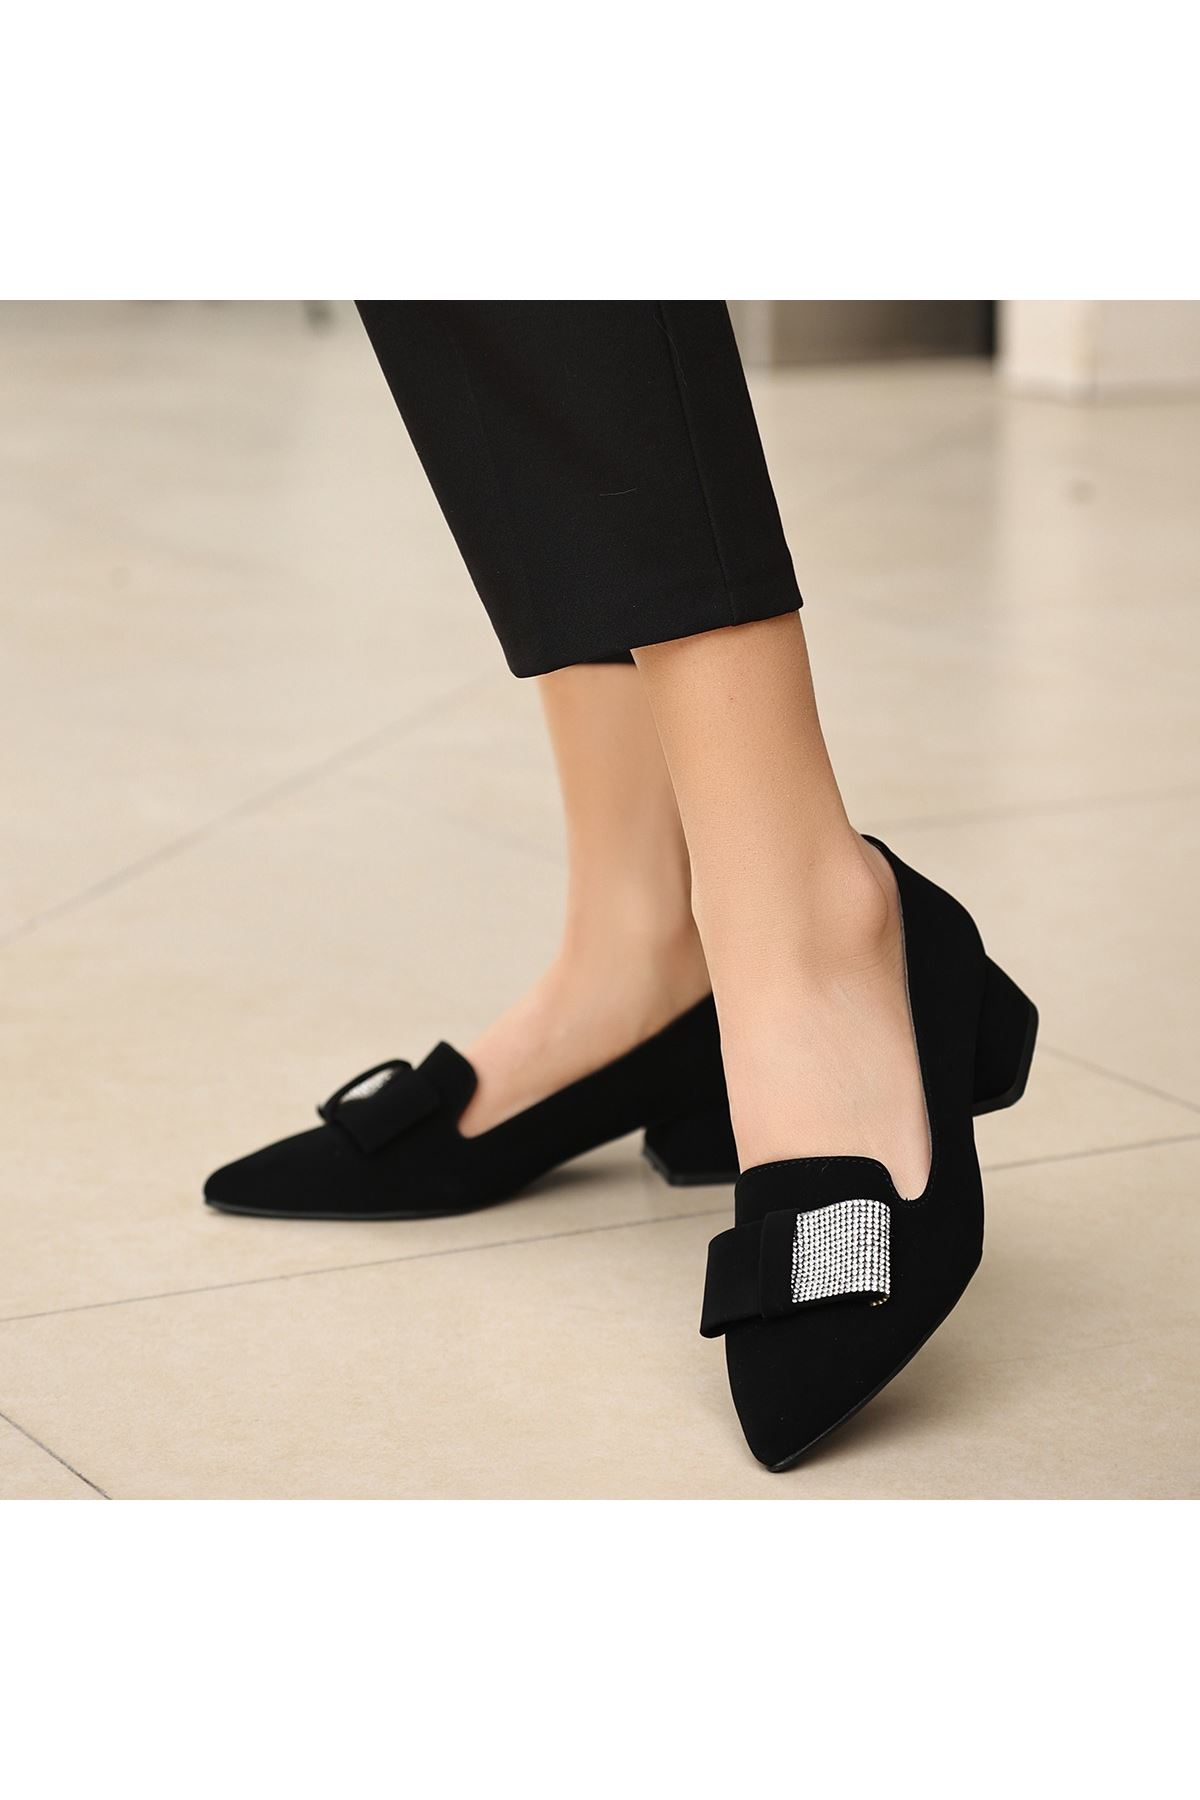 Coly Siyah Süet Topuklu Ayakkabı